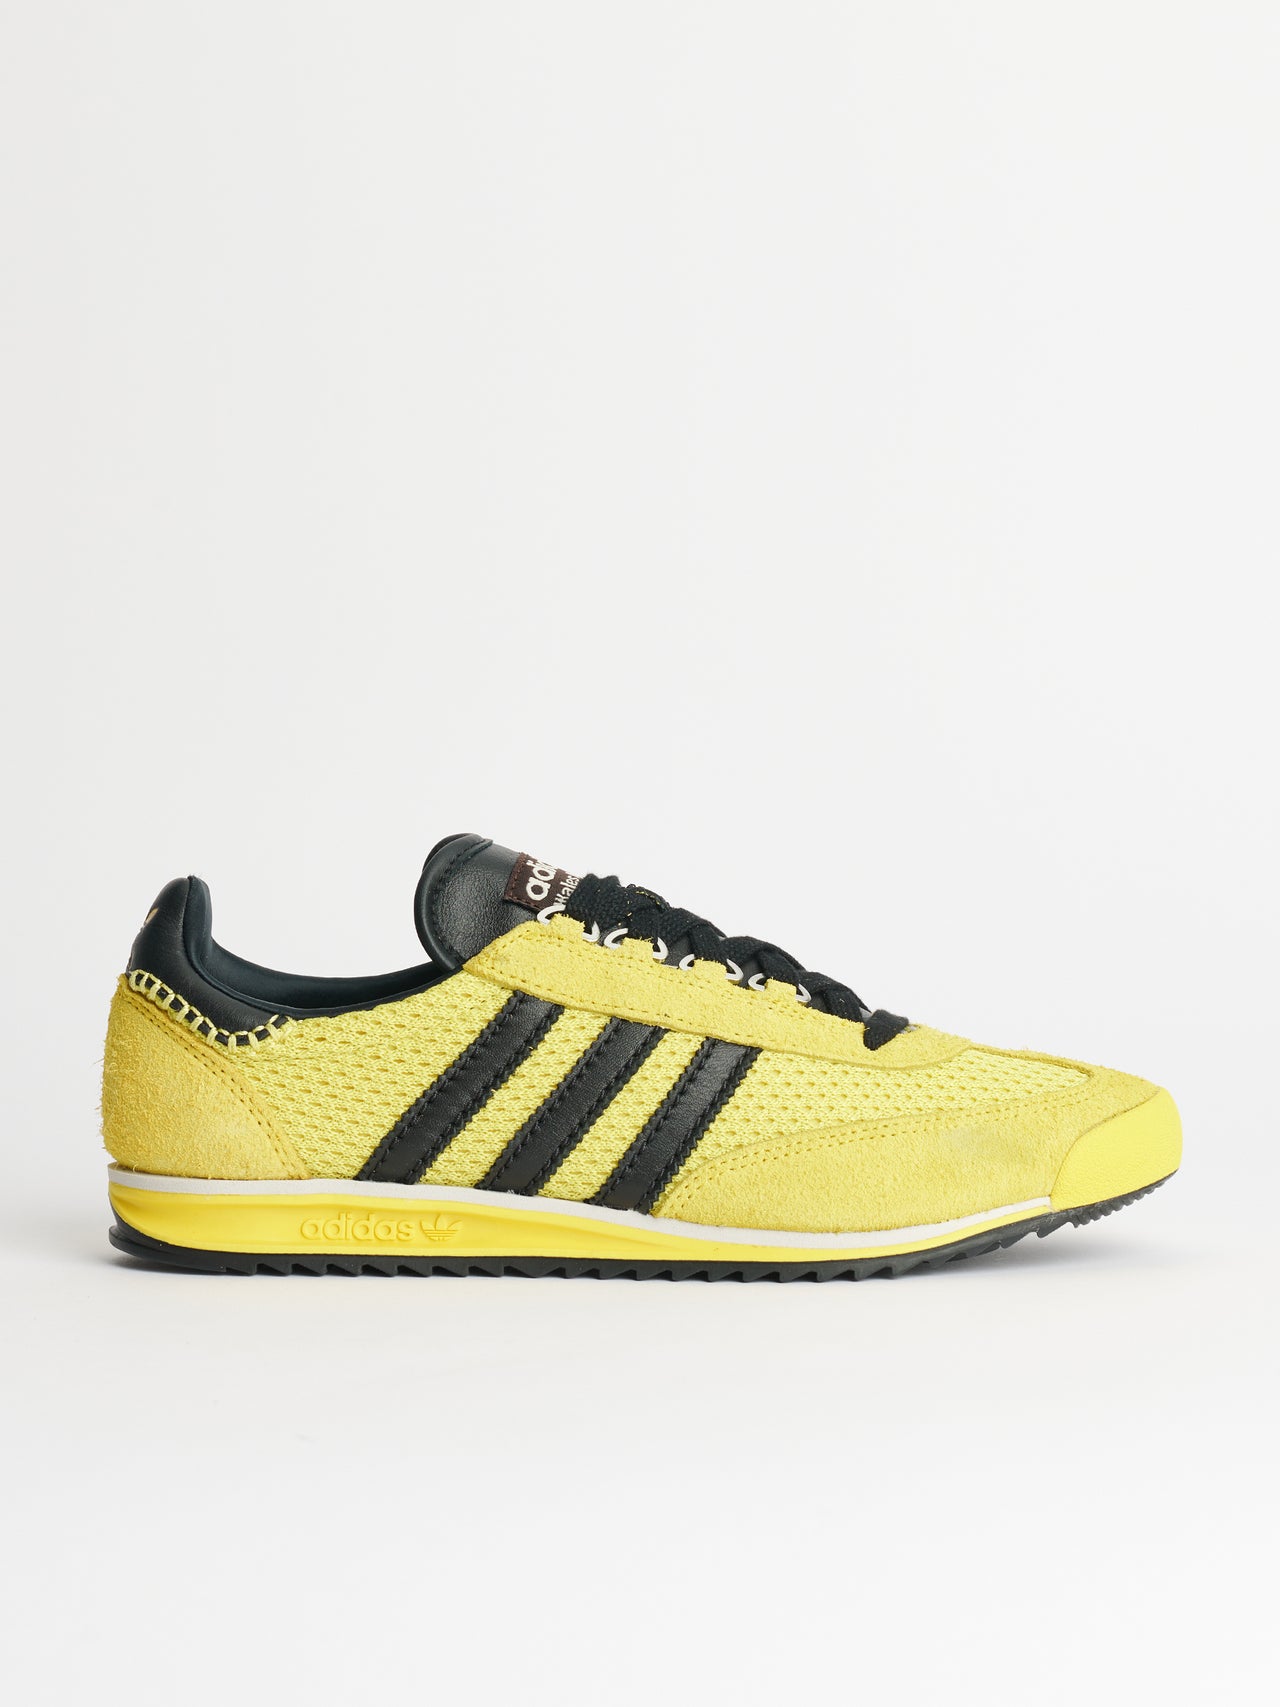 adidas Originals by Wales Bonner SL76 Yellow / Borang